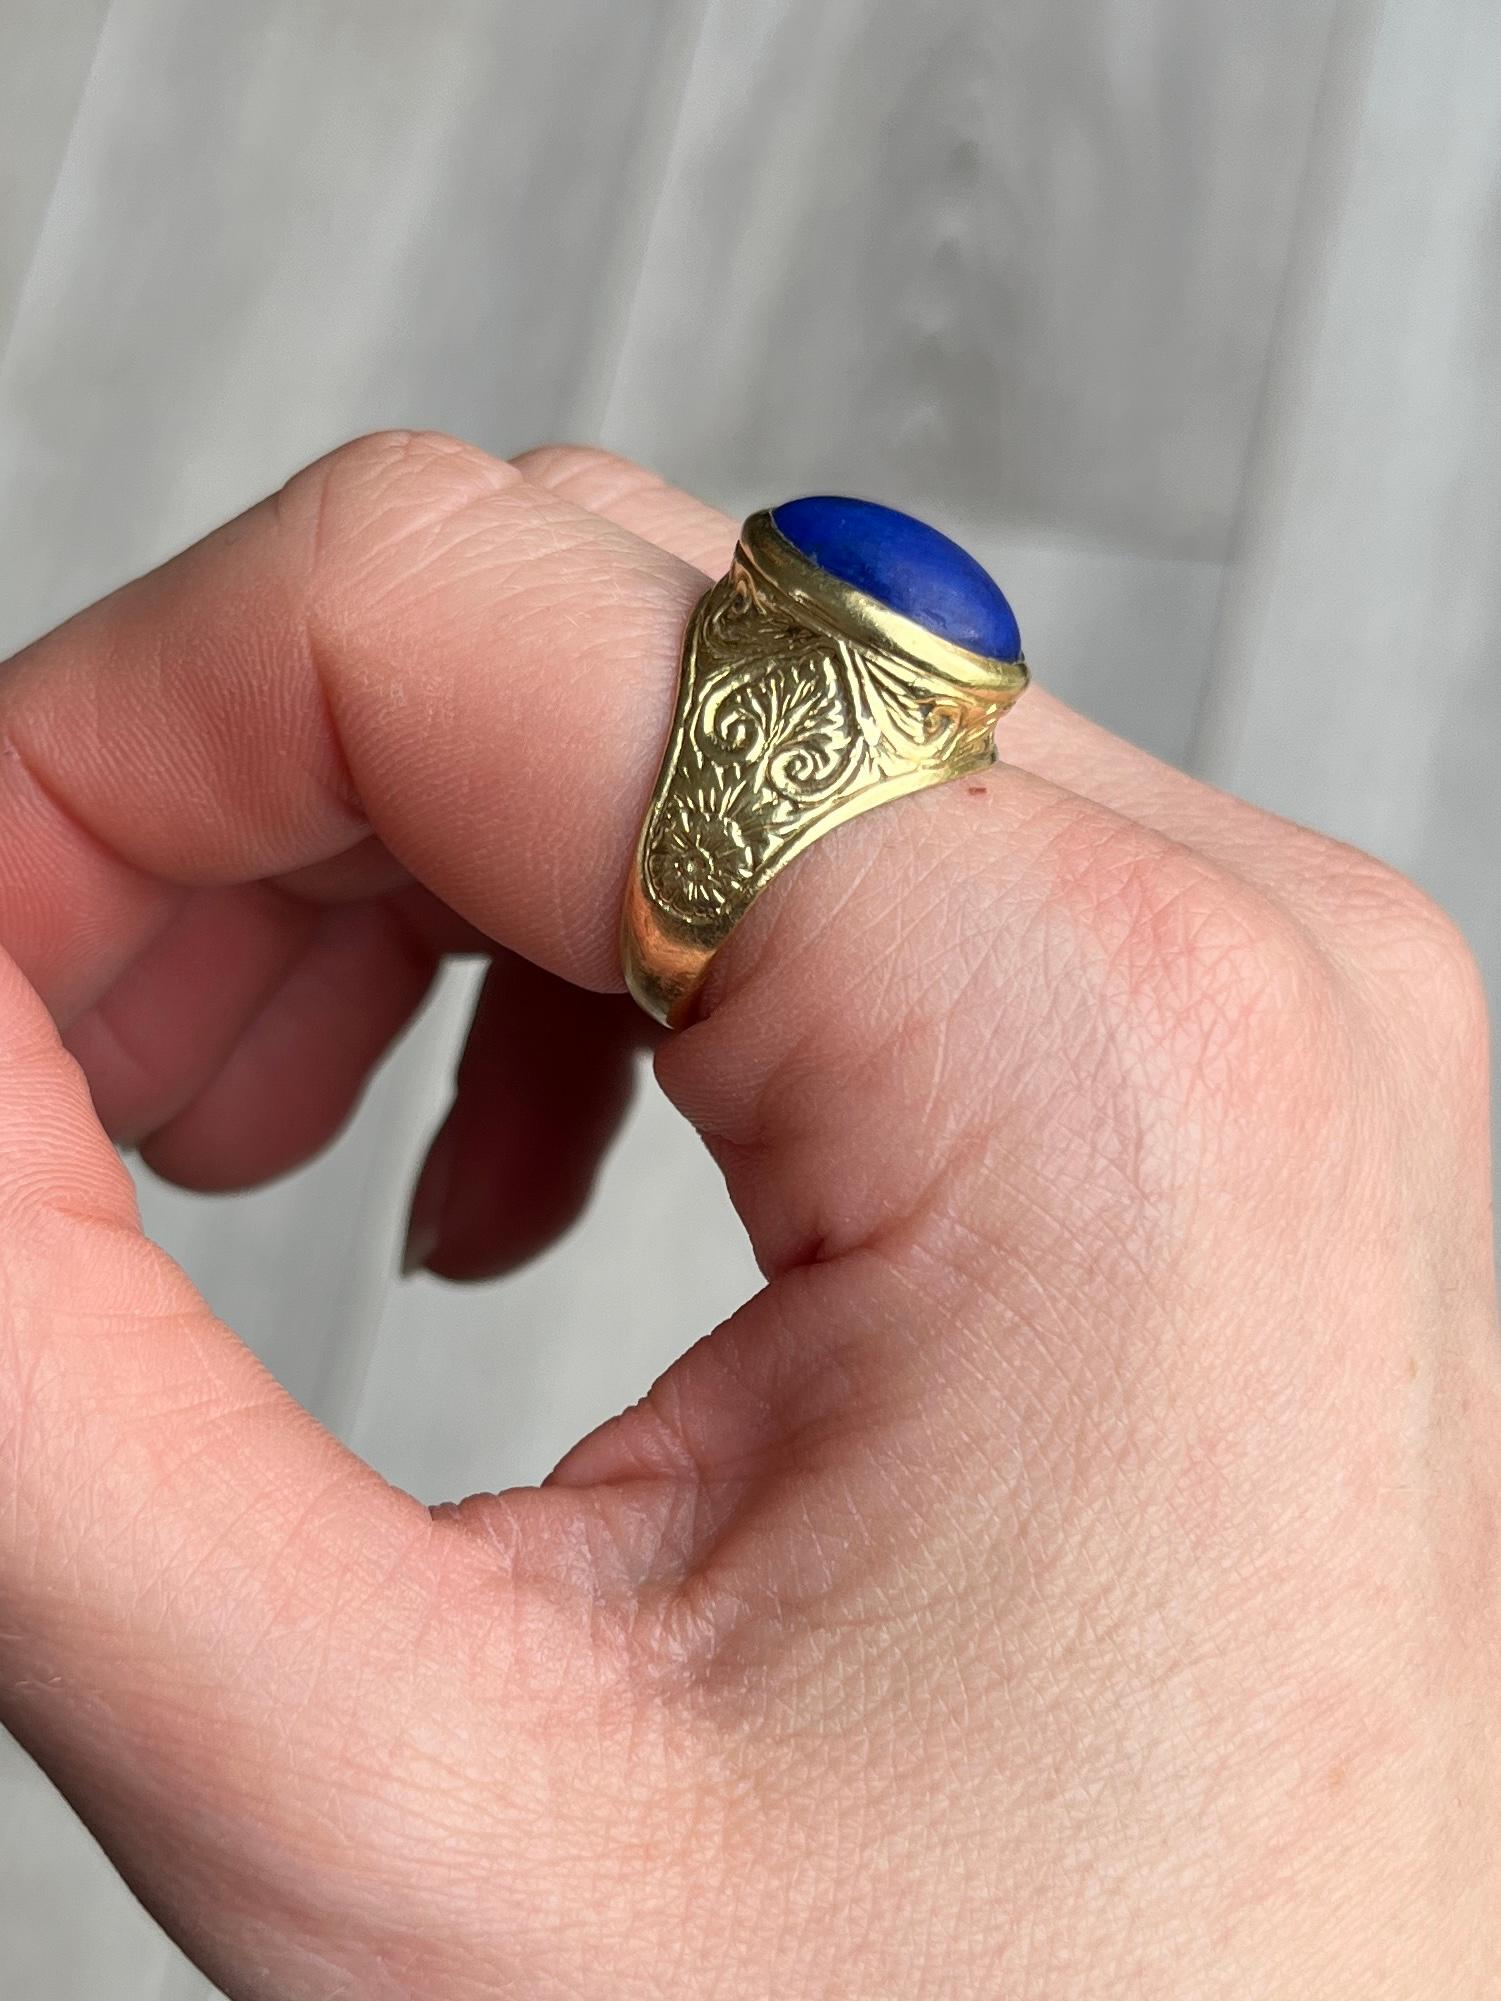 Der Lapis-Stein in diesem Ring ist schön und hell. Der glatte Schliff des Steins passt perfekt zu dem klobigen und dekorativen Goldring. Gefertigt aus 18 Karat Gold. 

Ringgröße: N 1/2 oder 7
Stein Abmessungen: 14x10mm

Gewicht: 7,1g